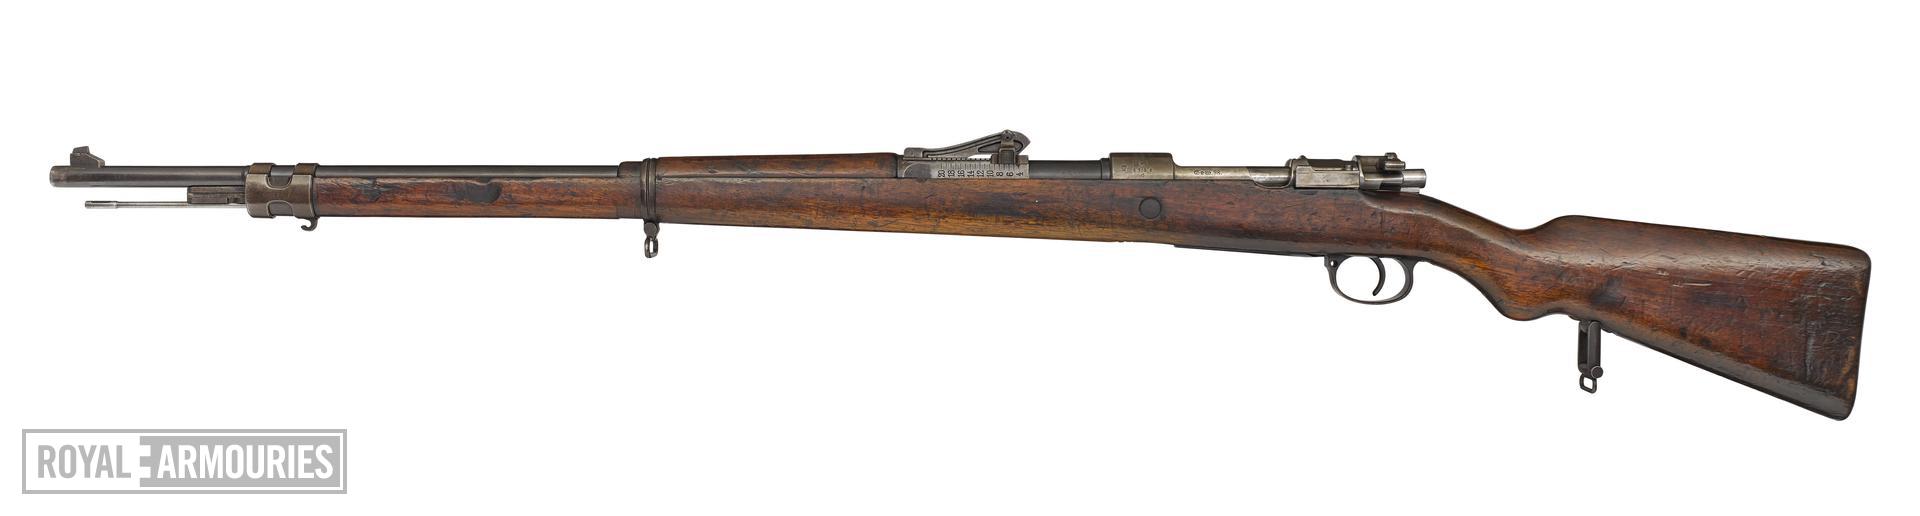 Centrefire bolt-action rifle - Mauser Gewehr 98 (about 1916)(2).jpg